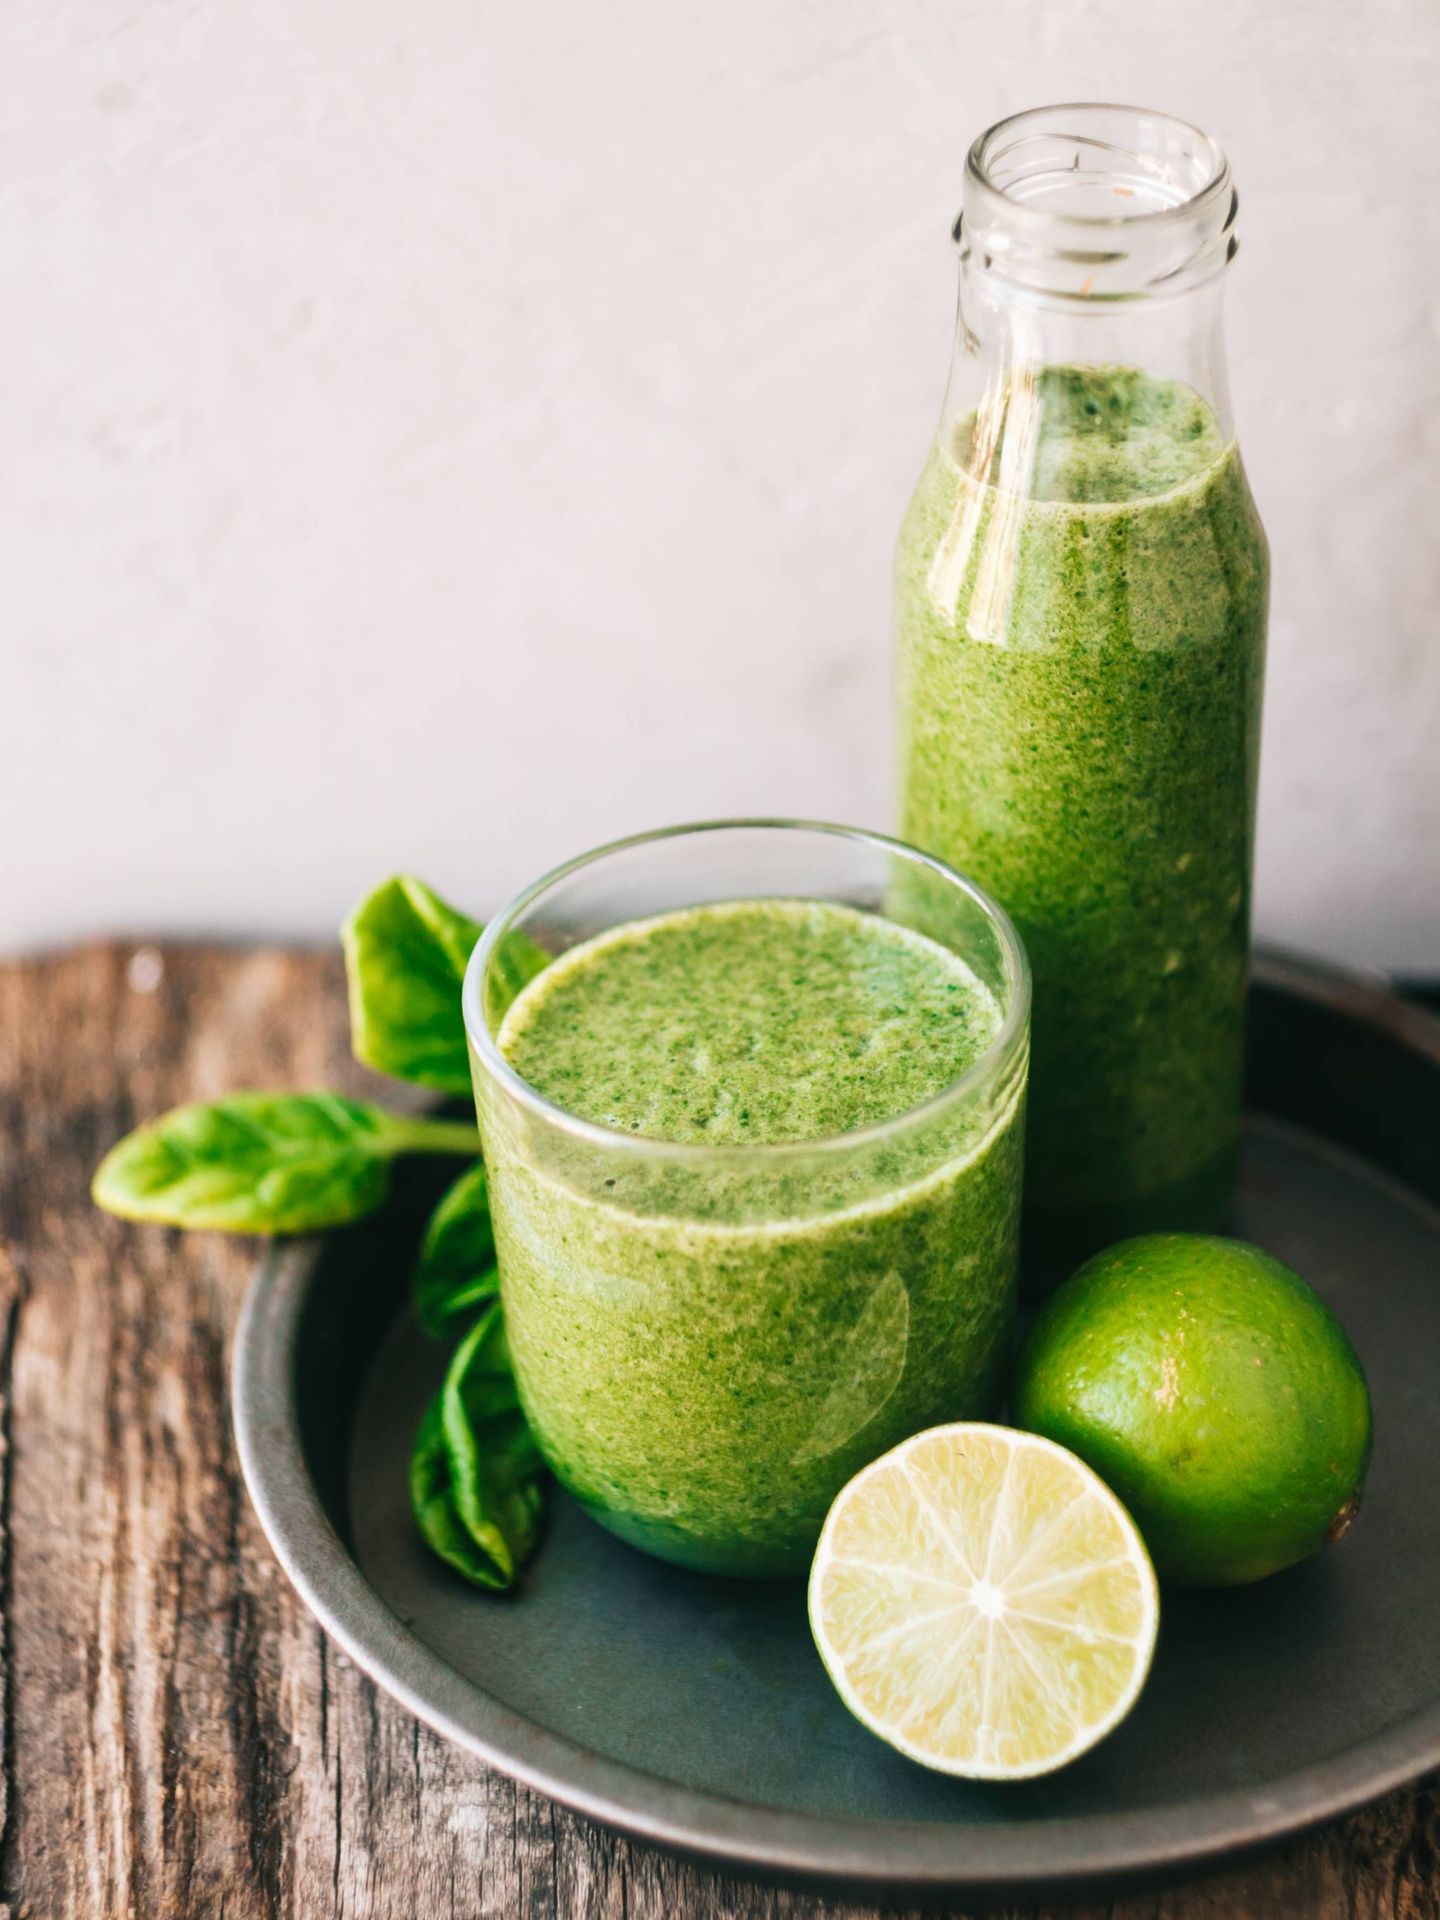 Los zumos o batidos verdes tienen al menos un ingrediente de este color. (Alina Karpenko para Unsplash)